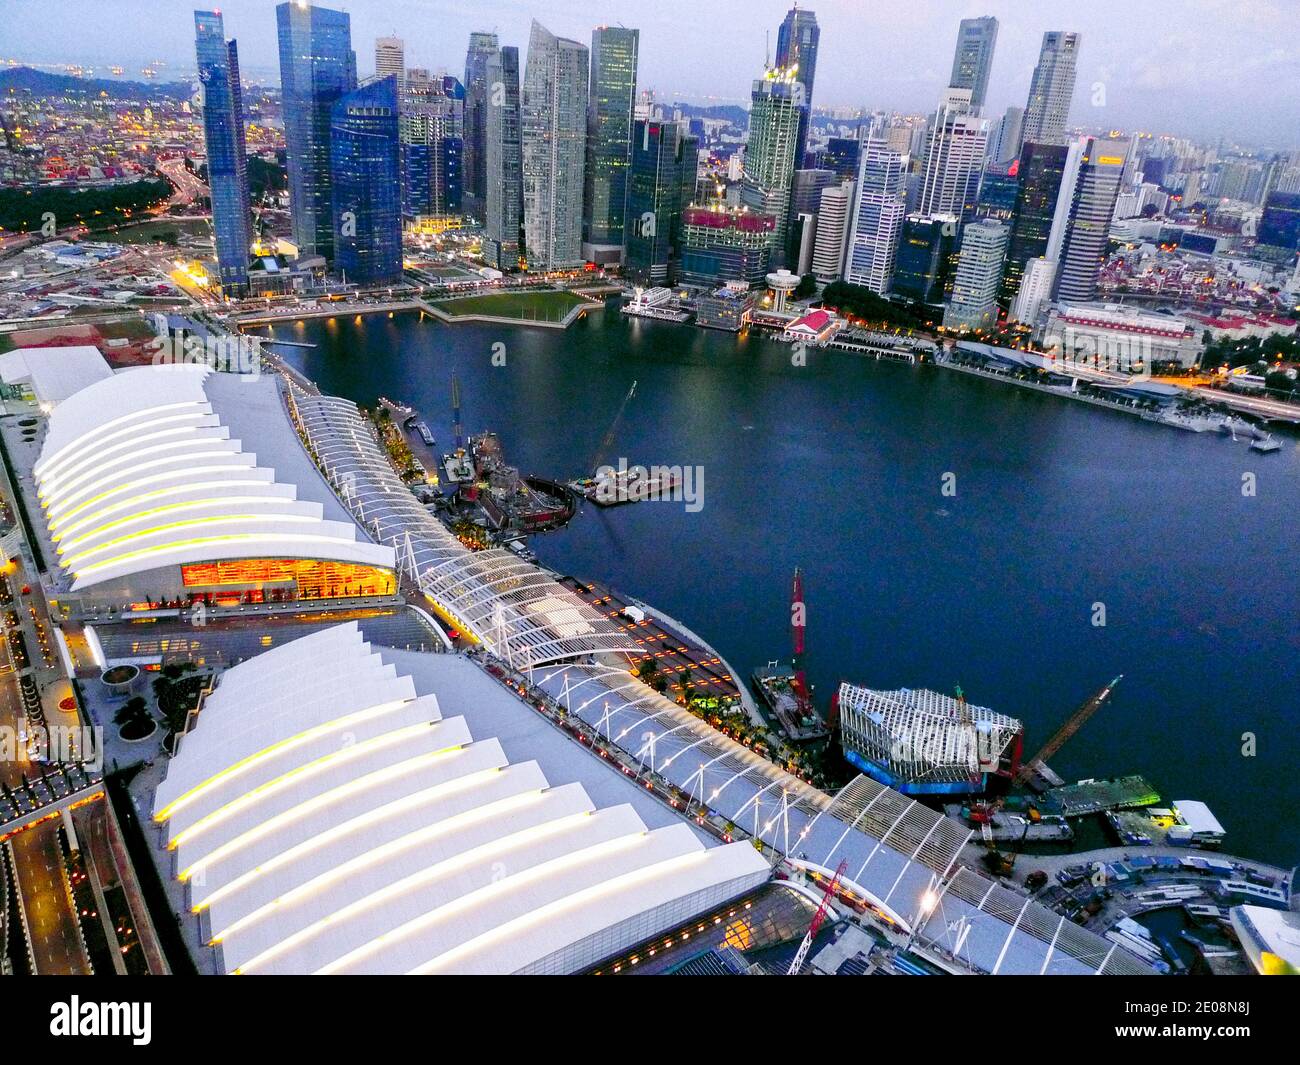 Une vue sur les sables de Marina Bay à Singapour, janvier 2012. Marina Bay Sands est une station balnéaire intégrée qui donne sur Marina Bay à Singapour. Il est facturé comme la propriété de casino autonome la plus chère au monde à 6 milliards de dollars. Avec le casino complet, le complexe dispose d'un hôtel de 2,561 chambres, d'un centre de congrès-exposition de 1,300,000 pieds carrés (120,000 m2), du centre commercial Shoppes at Marina Bay Sands de 800,000 mètres carrés (74,000 m2), d'un musée emblématique ArtScience, de deux grands théâtres, de sept restaurants « chefs célèbres », de deux Crystal Pavilions, d'une patinoire flottante, et le plus grand atriu du monde Banque D'Images